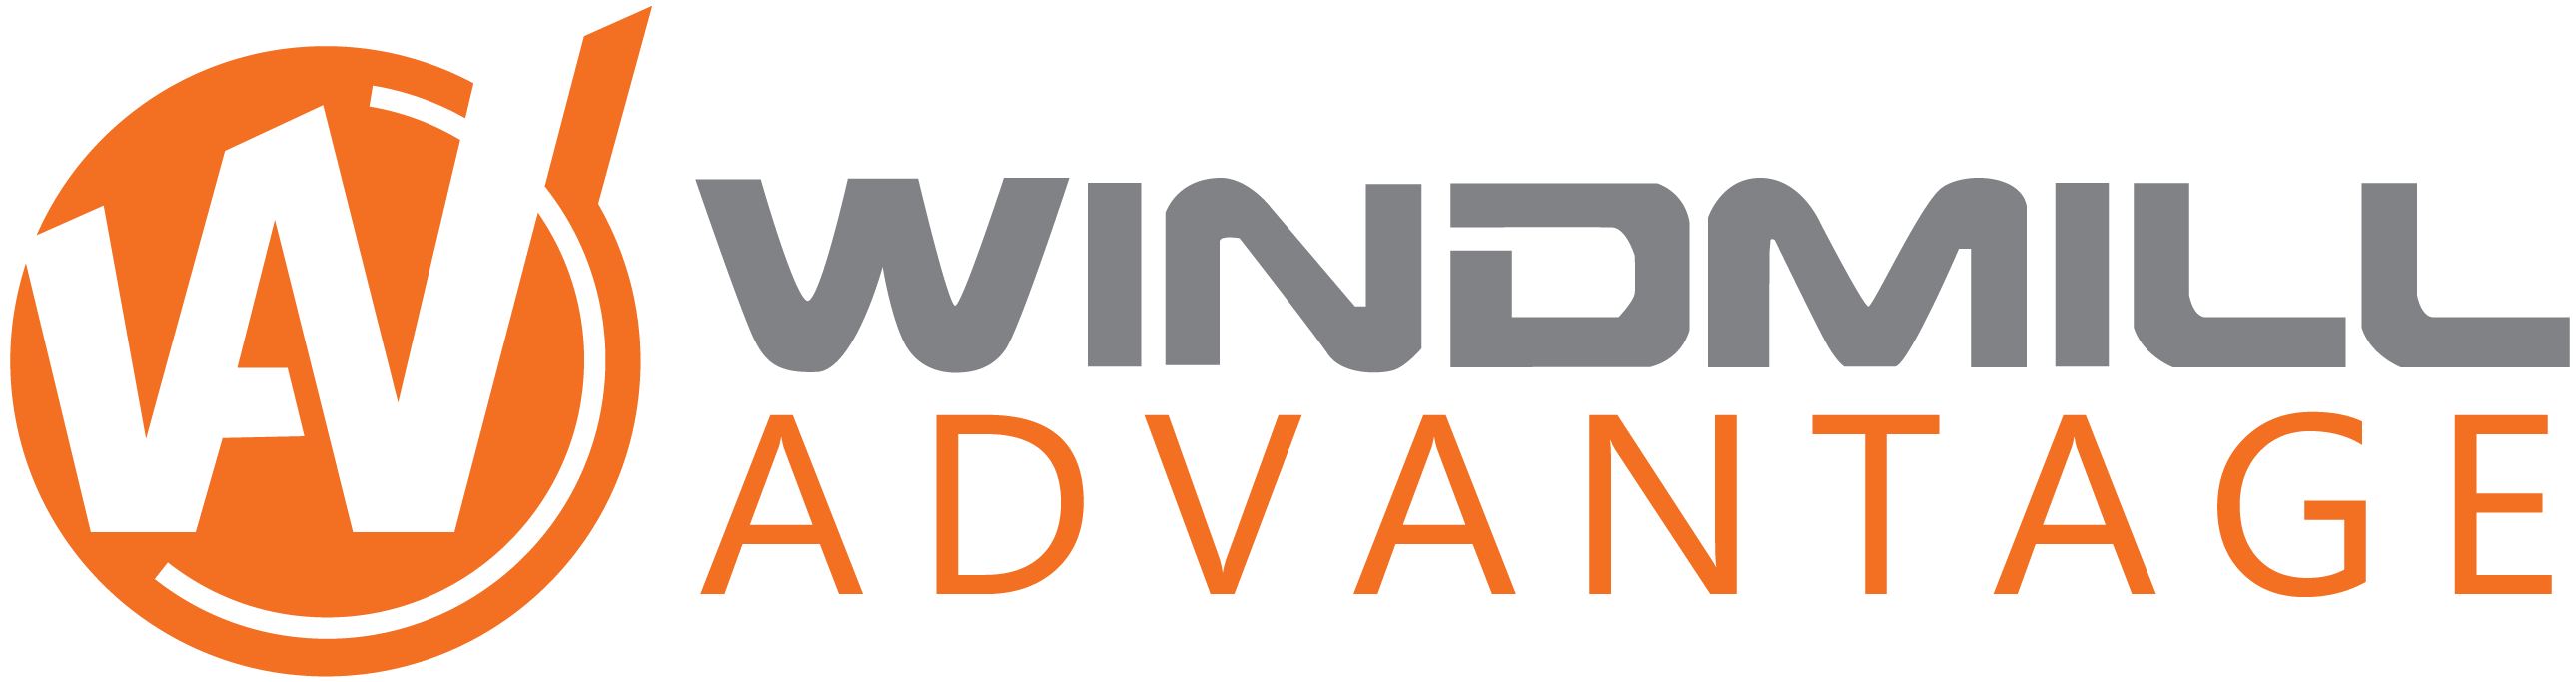 Windmill Logo